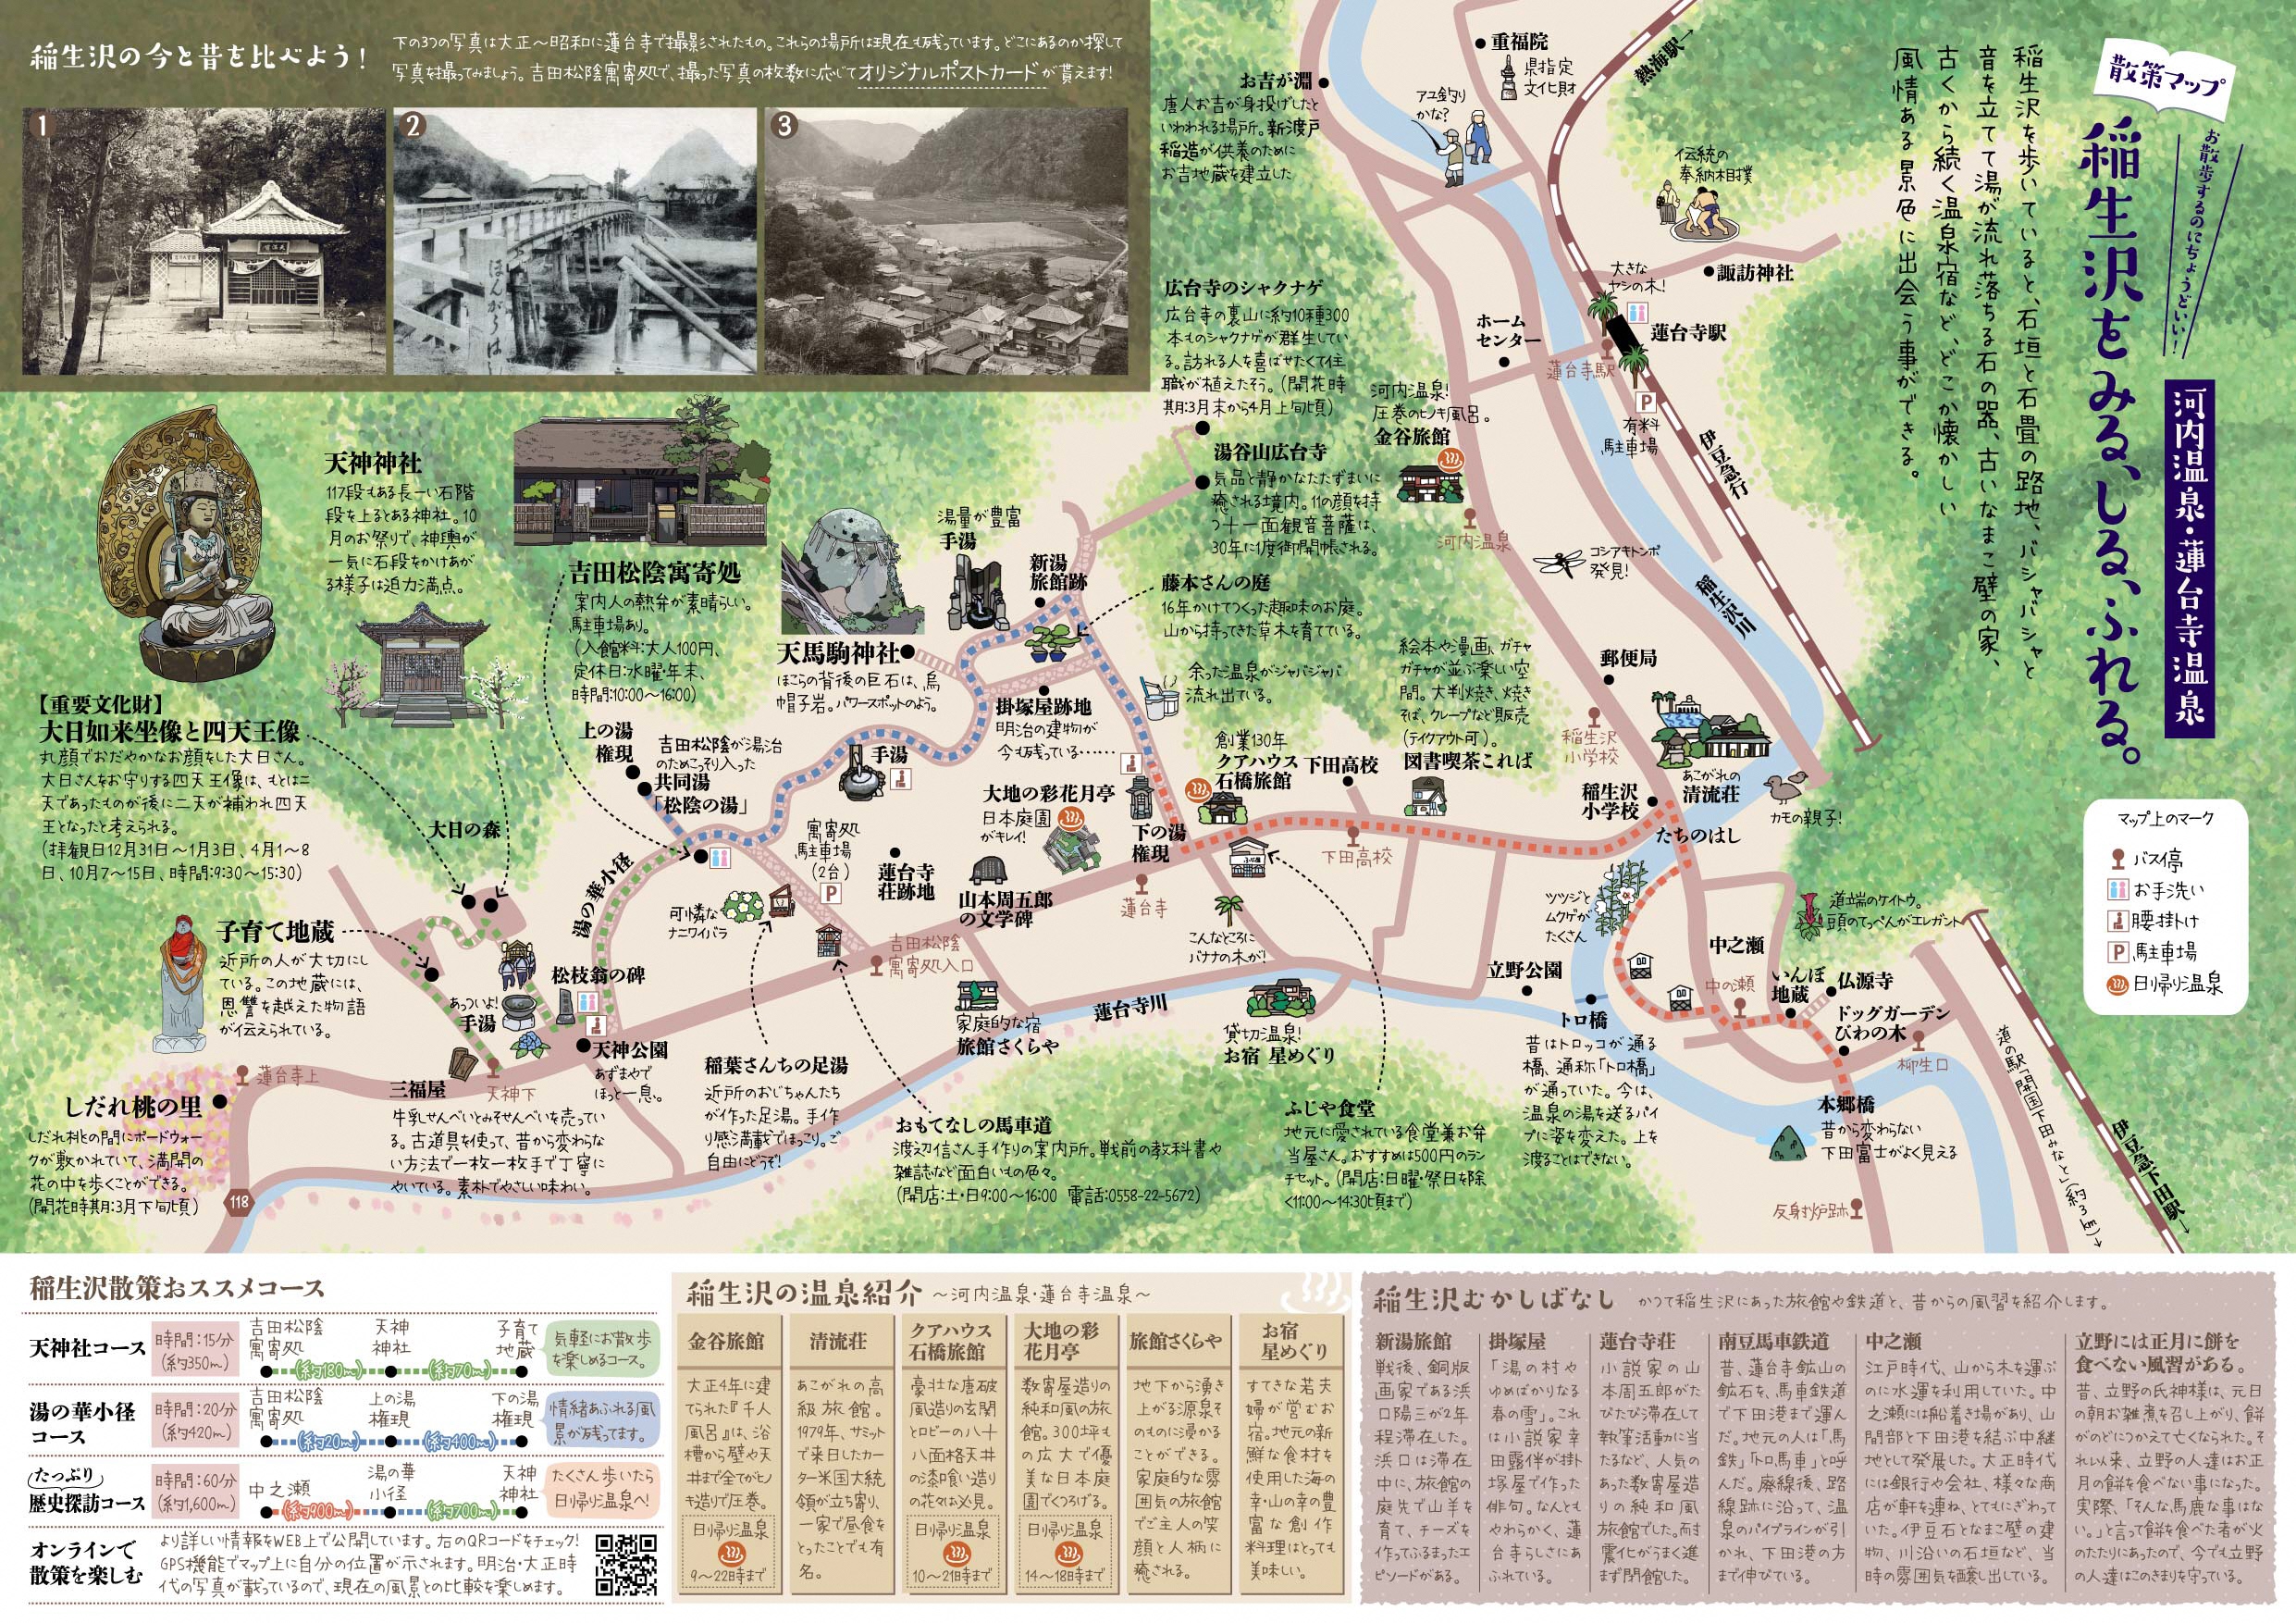 お散歩するのにちょうどいい 稲生沢をみる しる ふれる 散策マップ つくりました 下田市